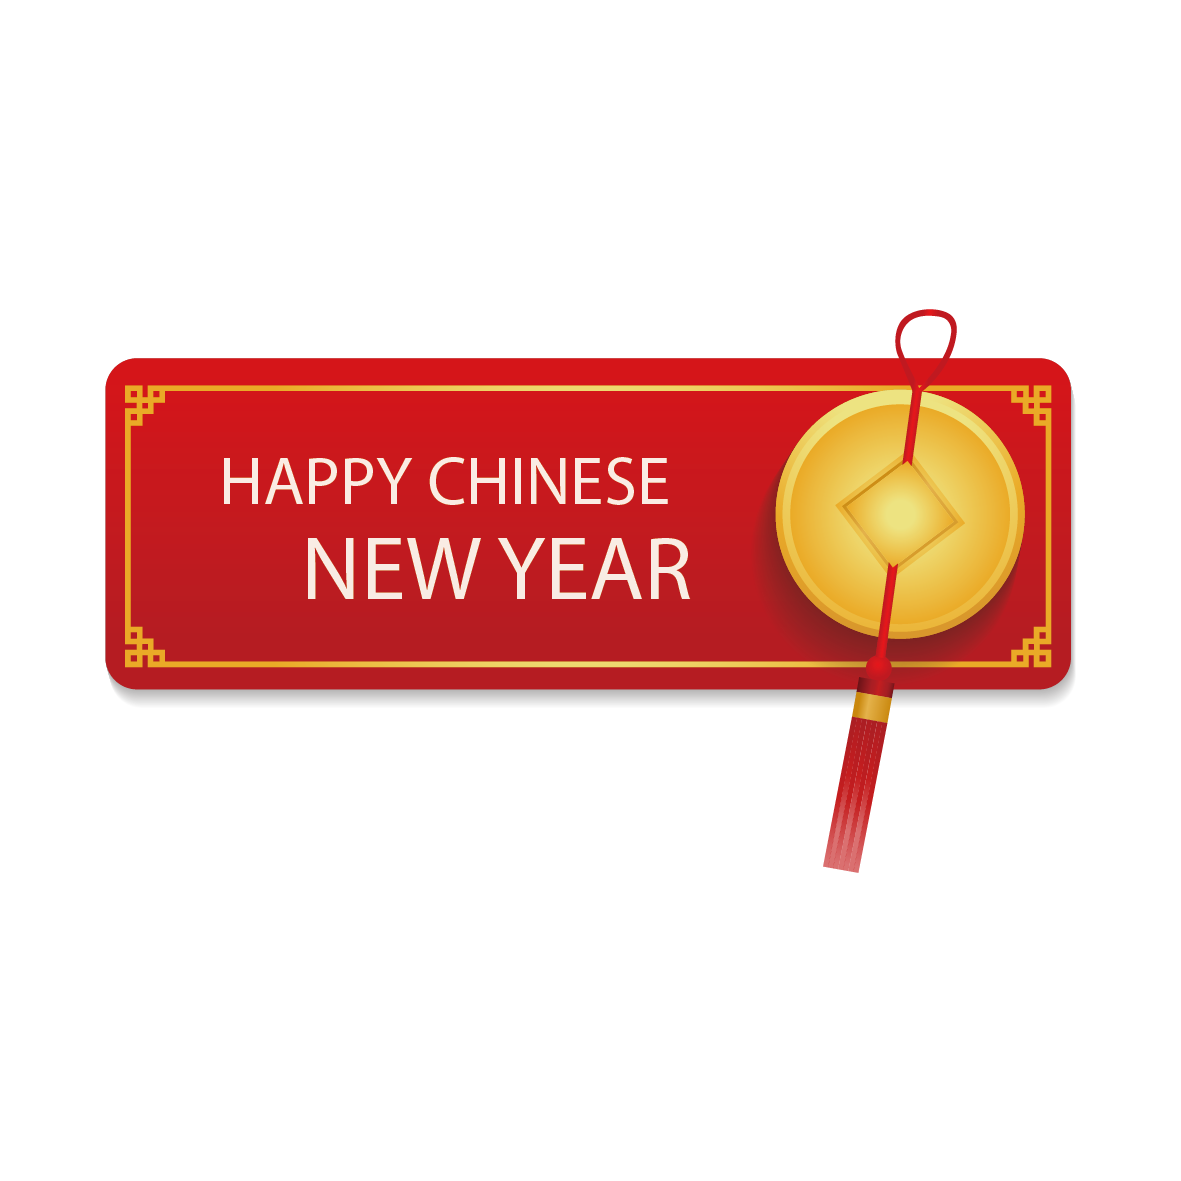 चीनी नव वर्ष और नव वर्ष की शुभकामनाएं